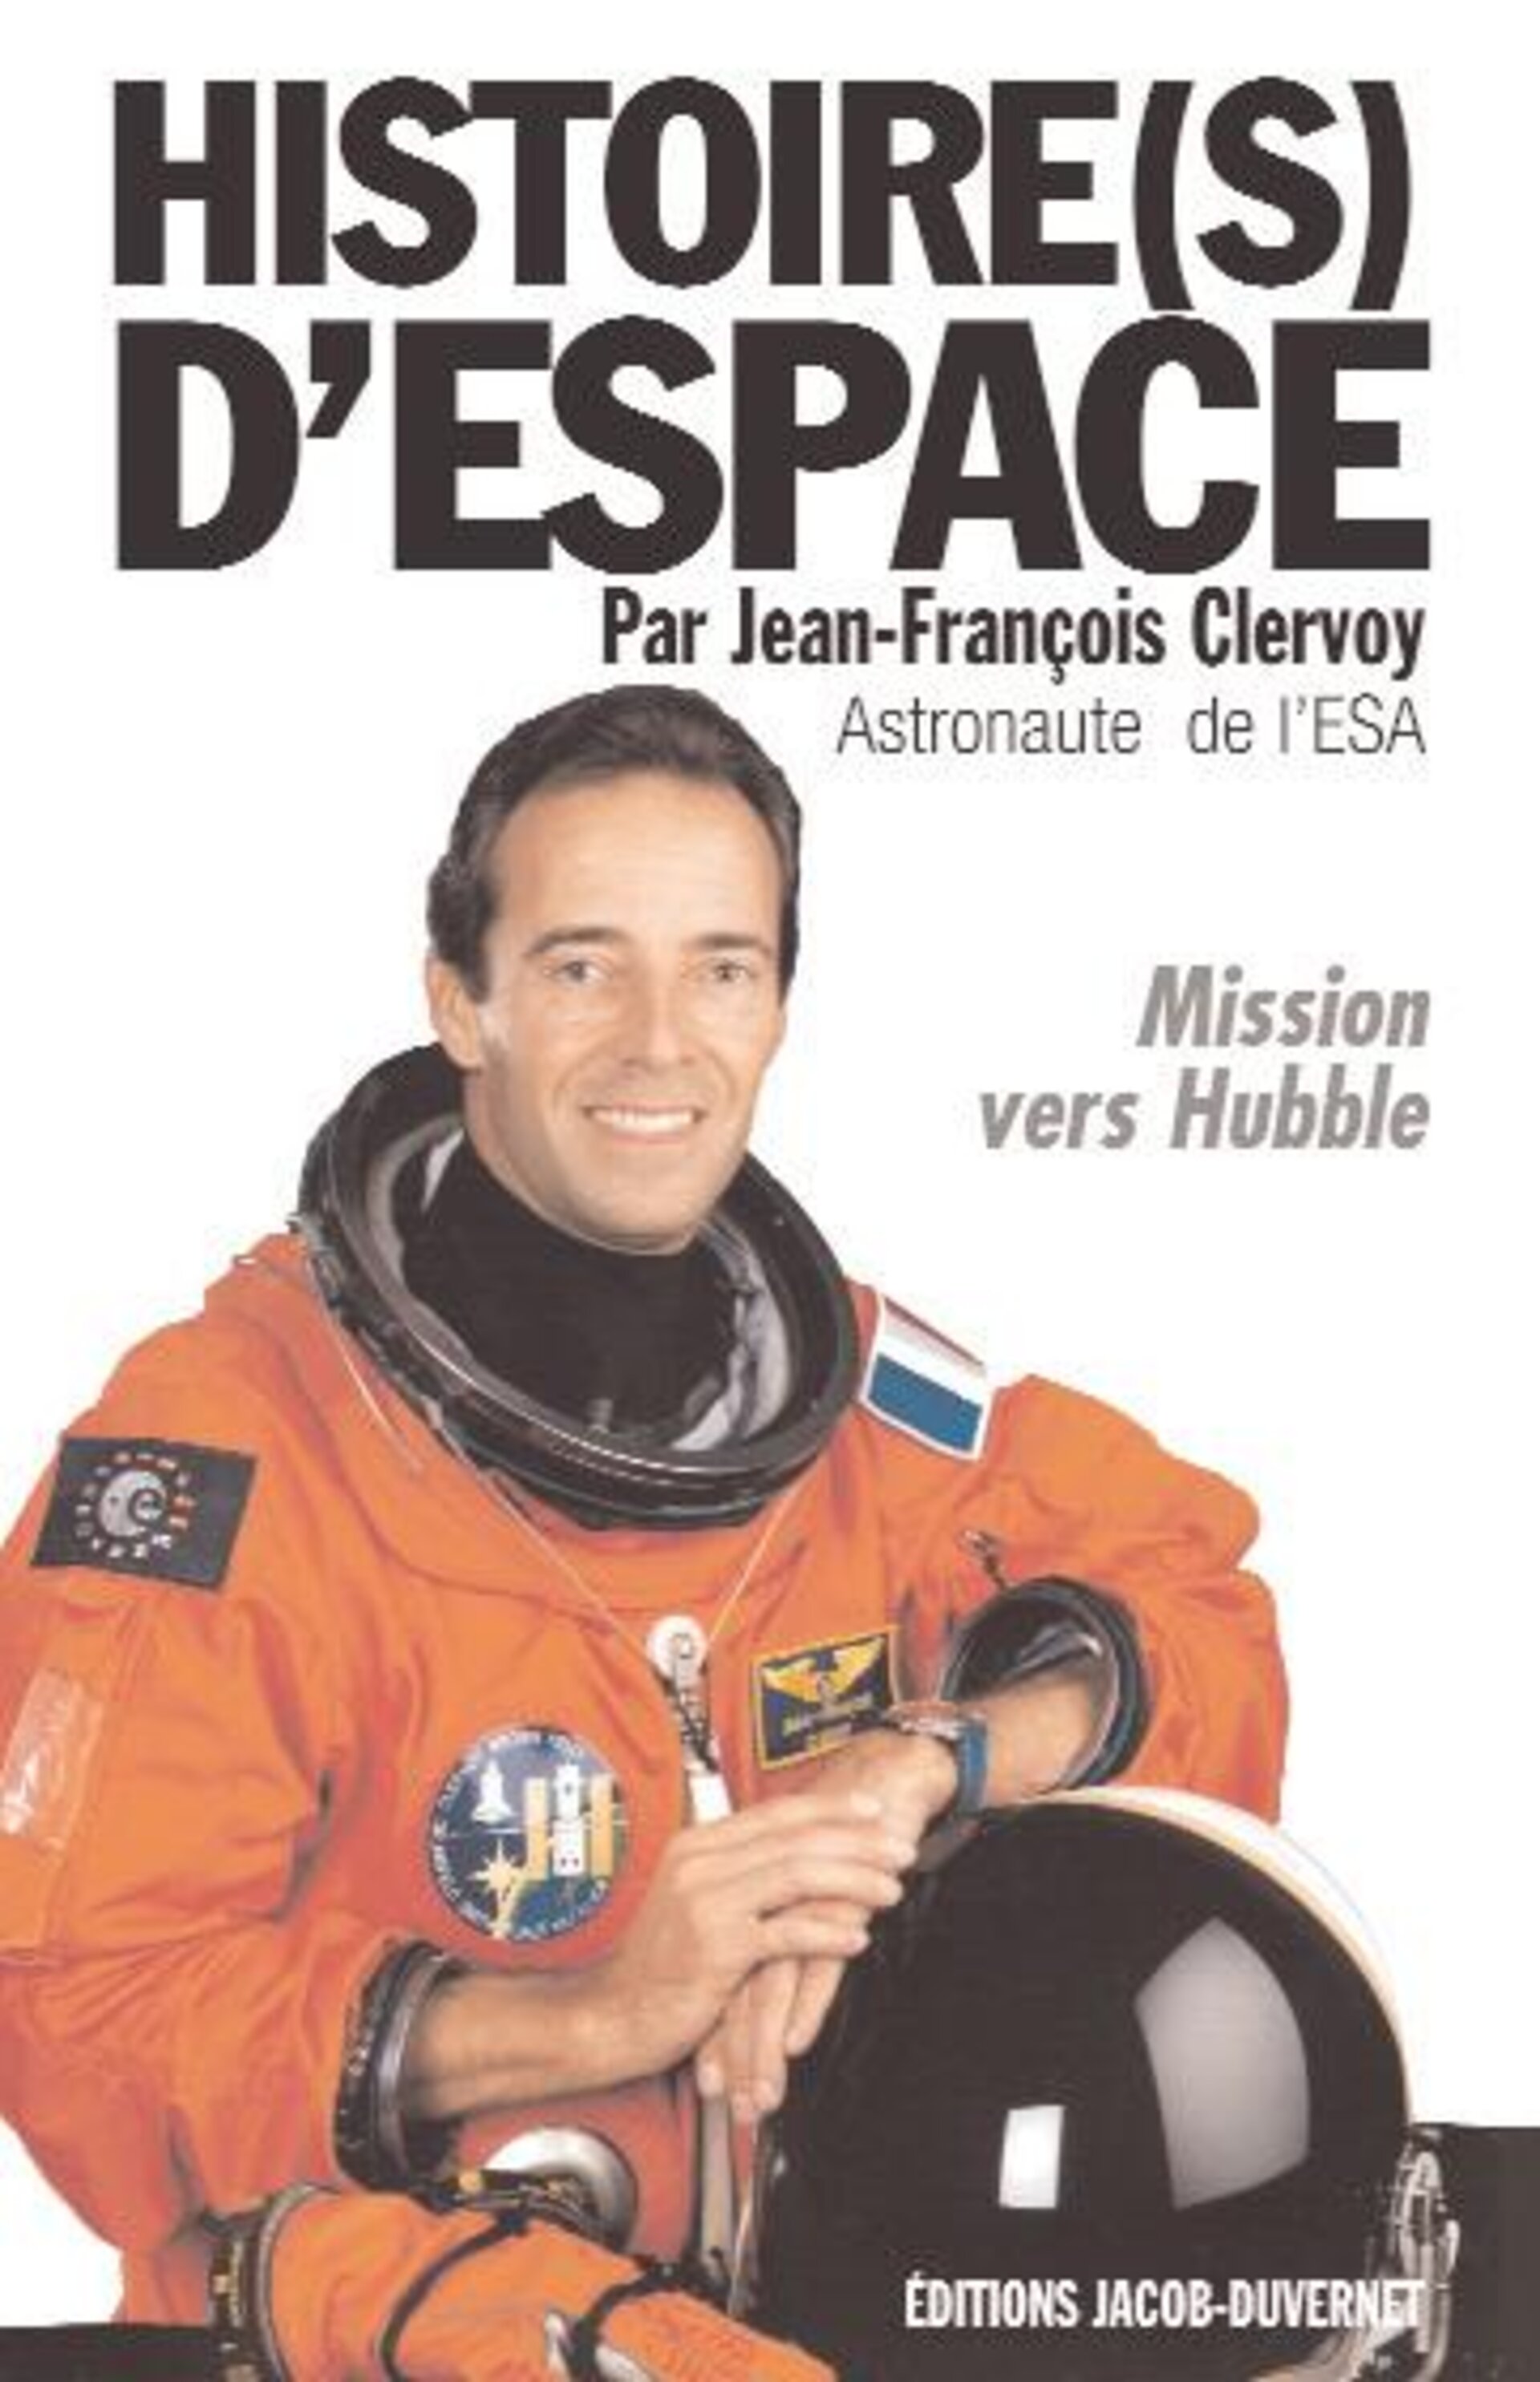 Couverture du livre "Histoire(s) d'espace" de Jean-François Clervoy